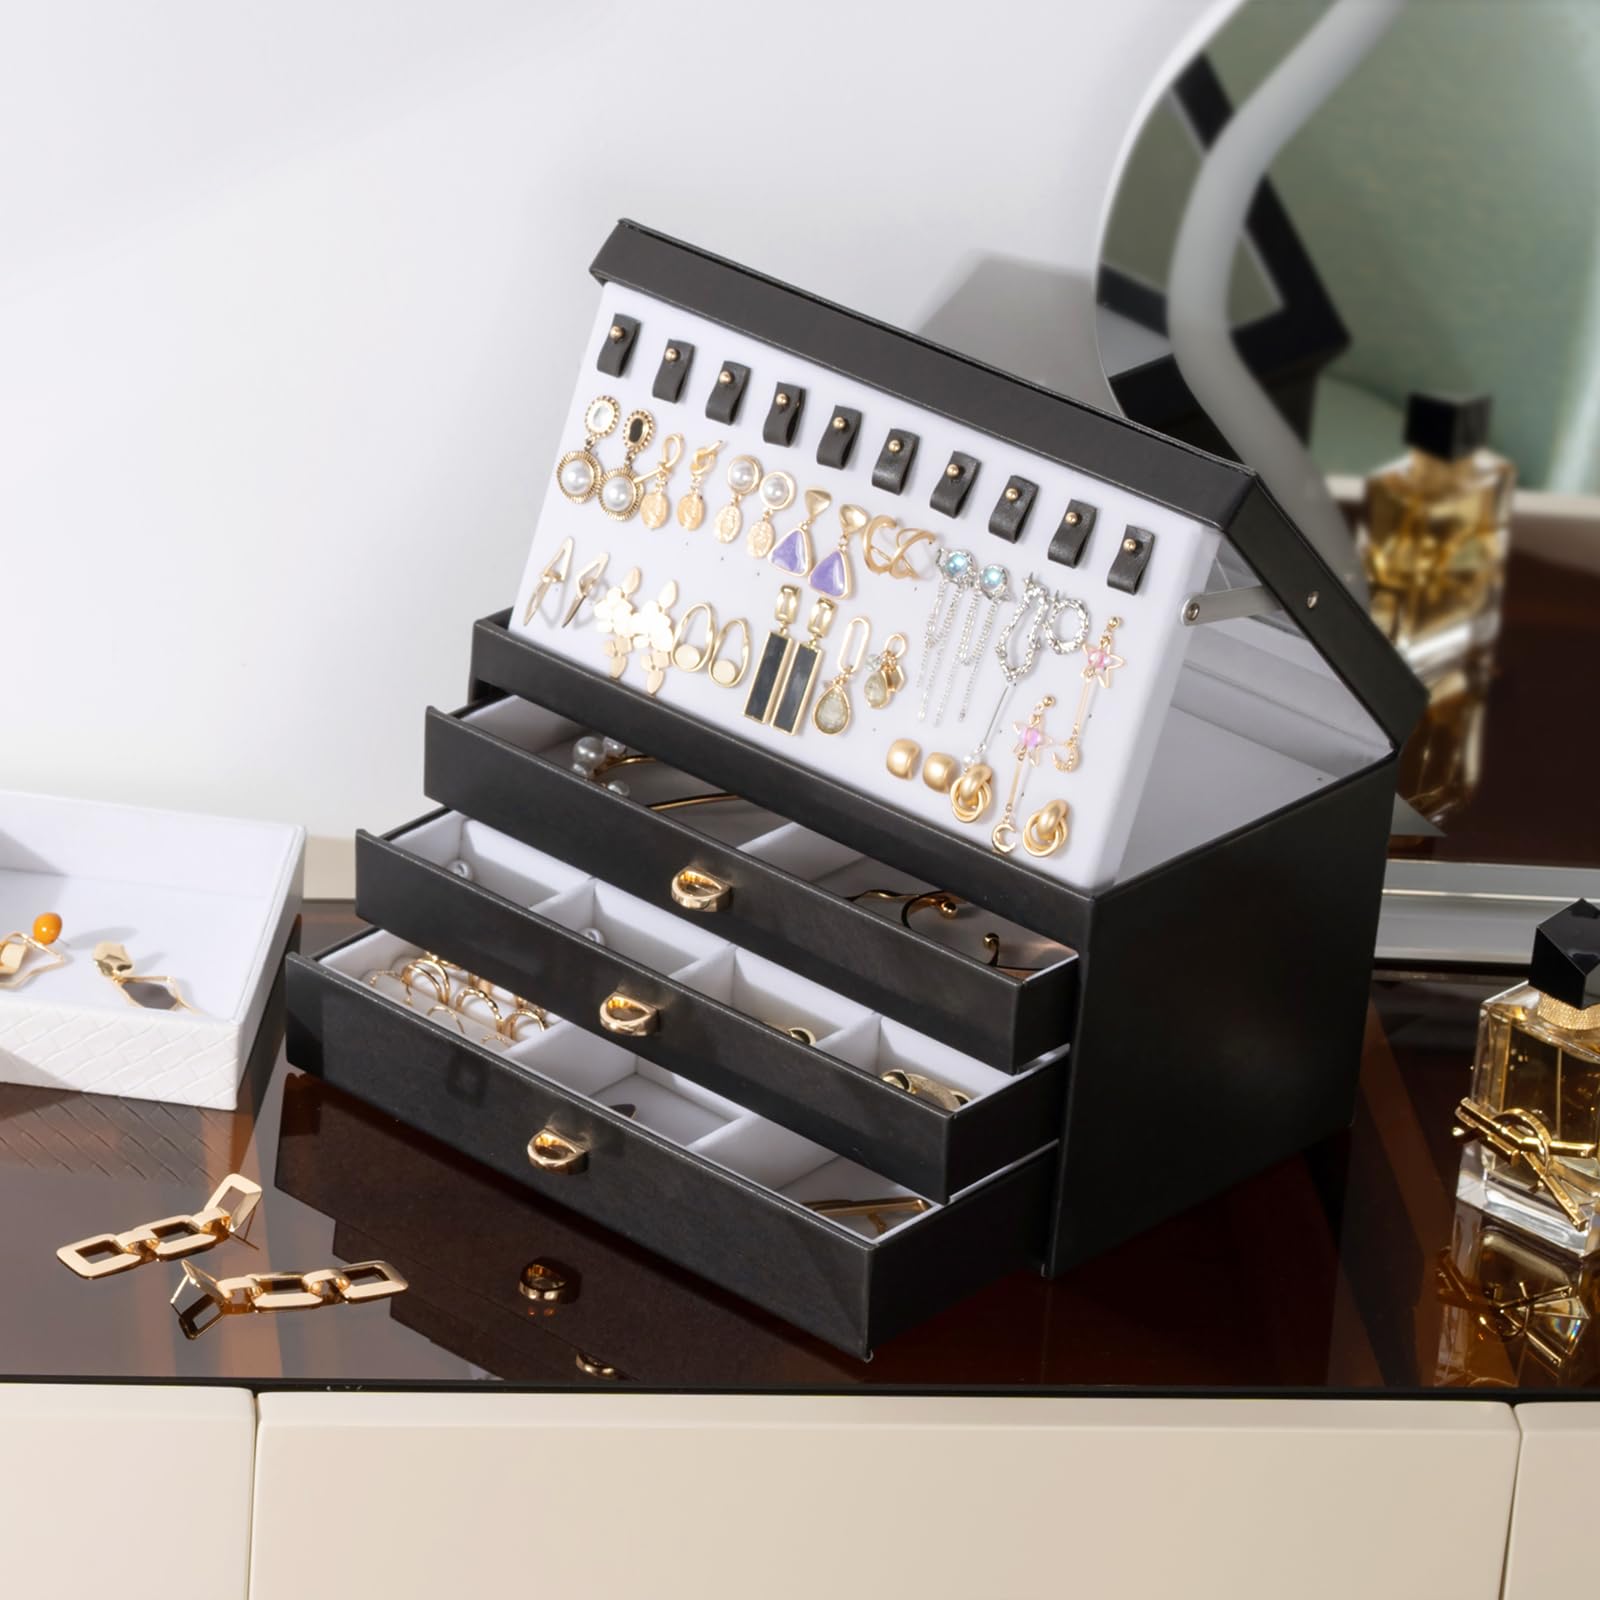 ProCase Jewelry Box Bundle with 6 Slots Watch Box